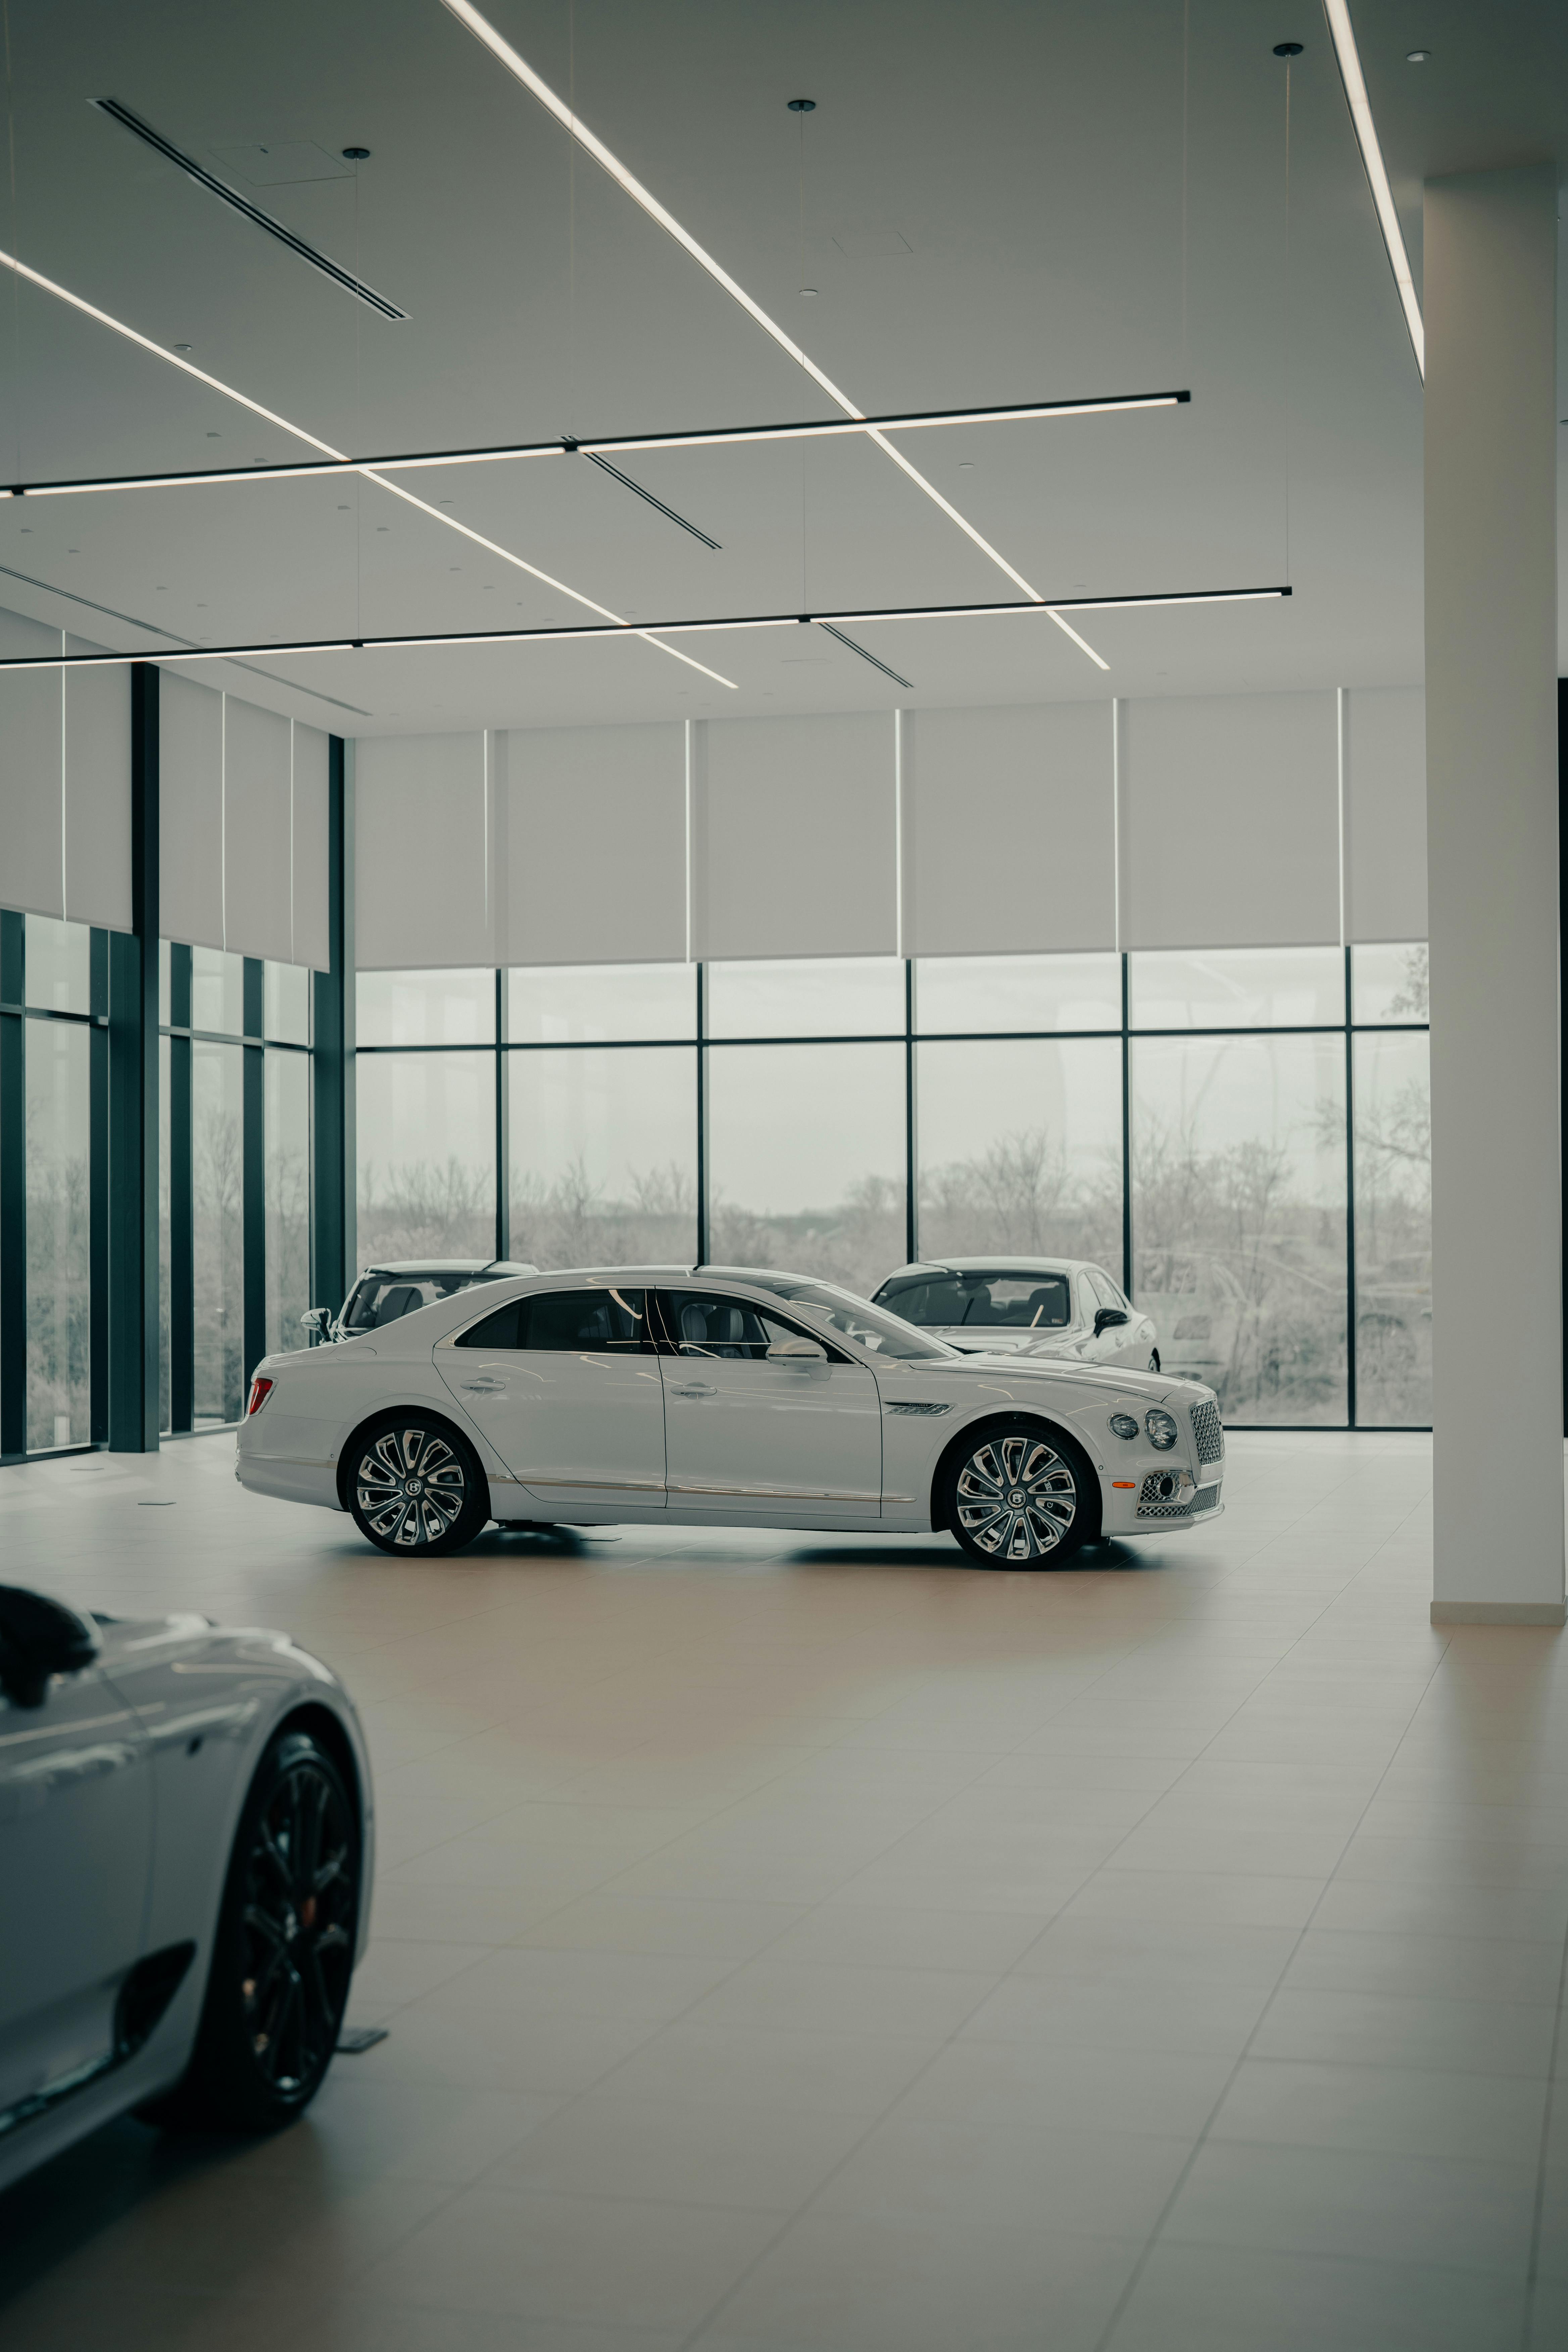 Une voiture blanche exposée dans un showroom | Source : Pexels